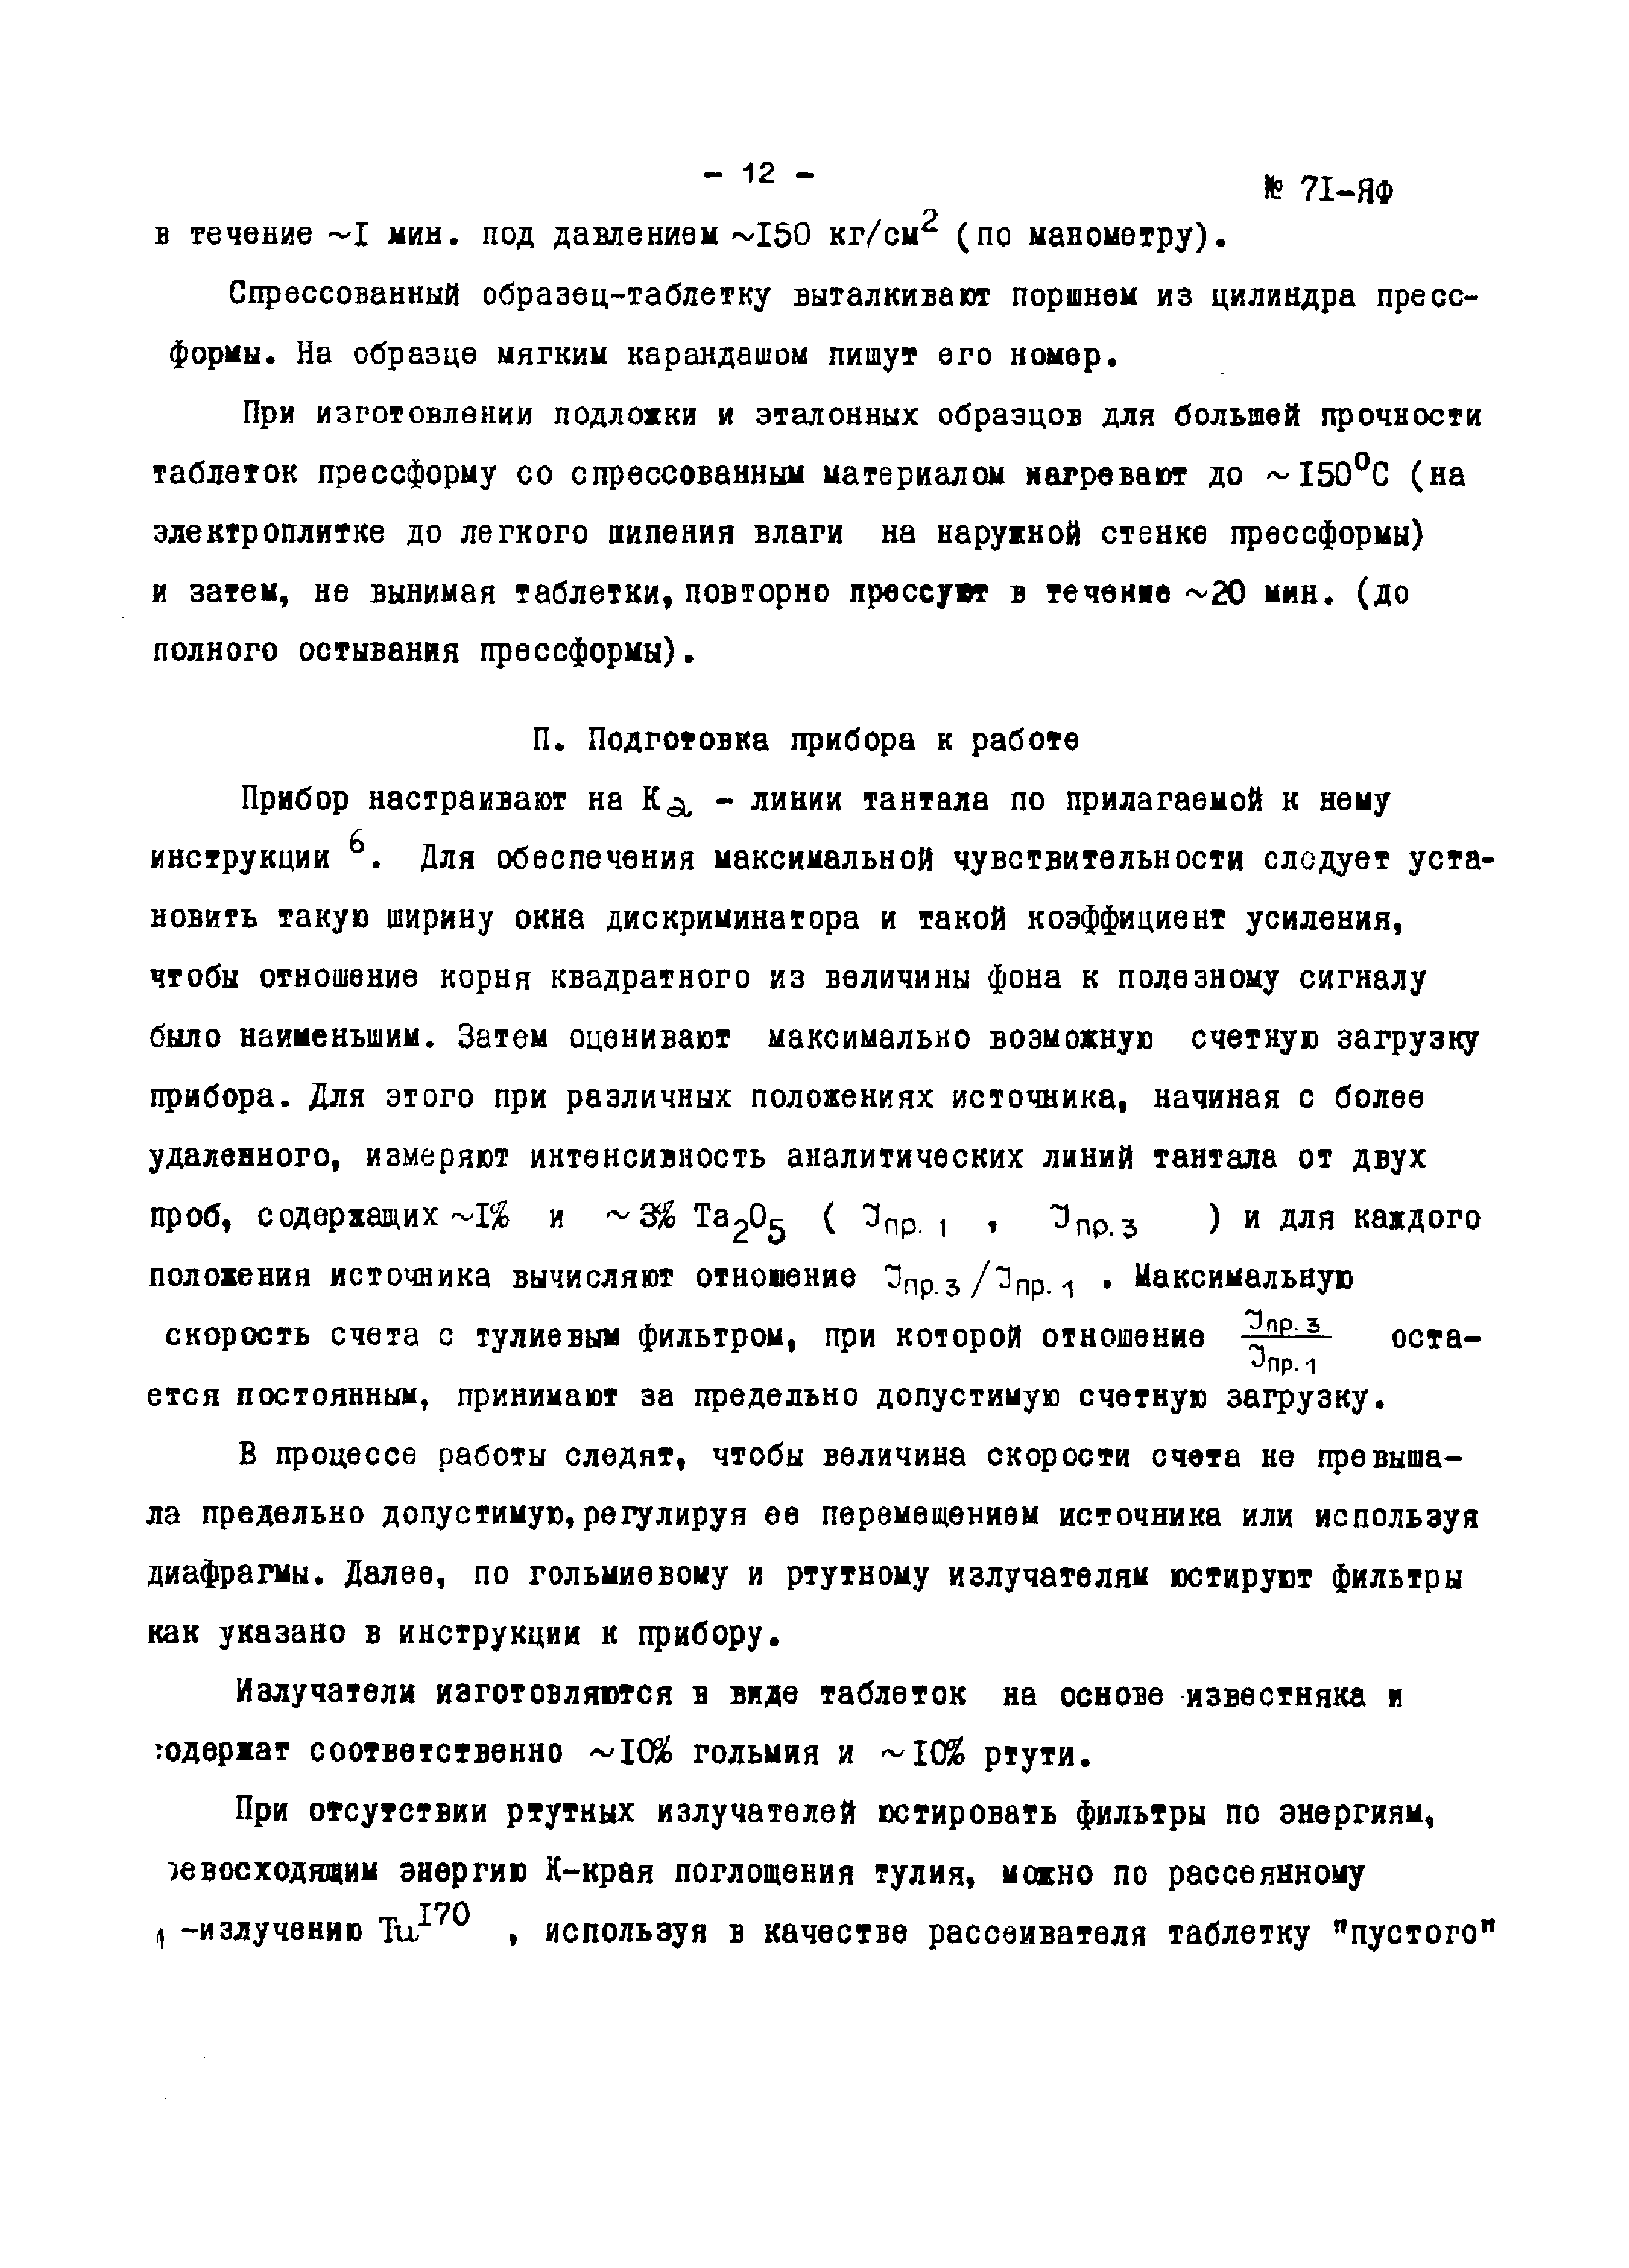 Инструкция НСАМ 71-ЯФ